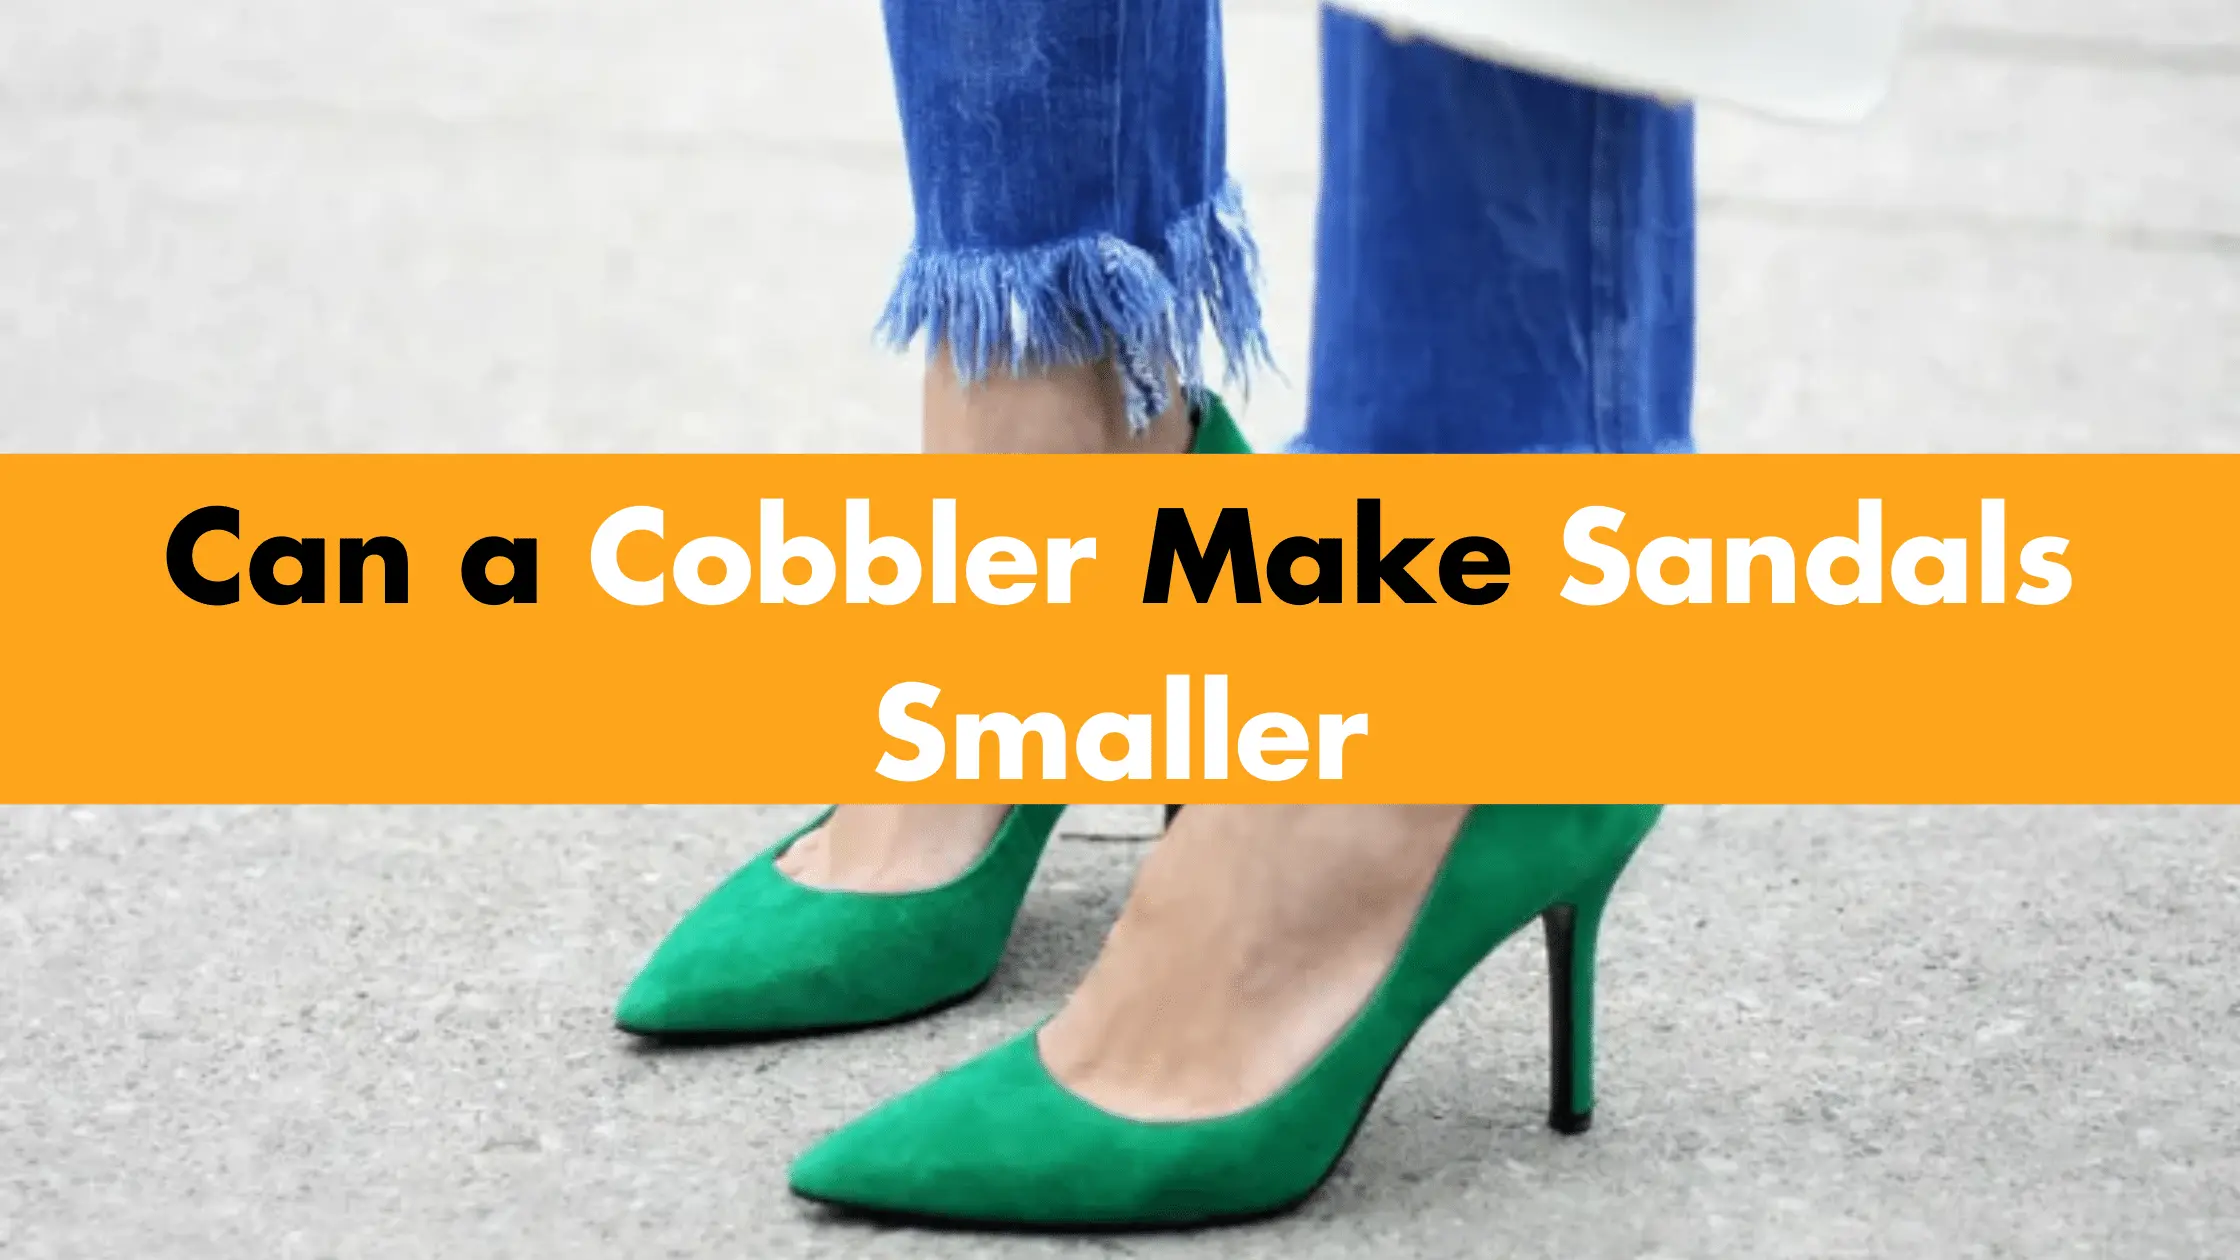 Can a Cobbler Make Sandals Smaller?